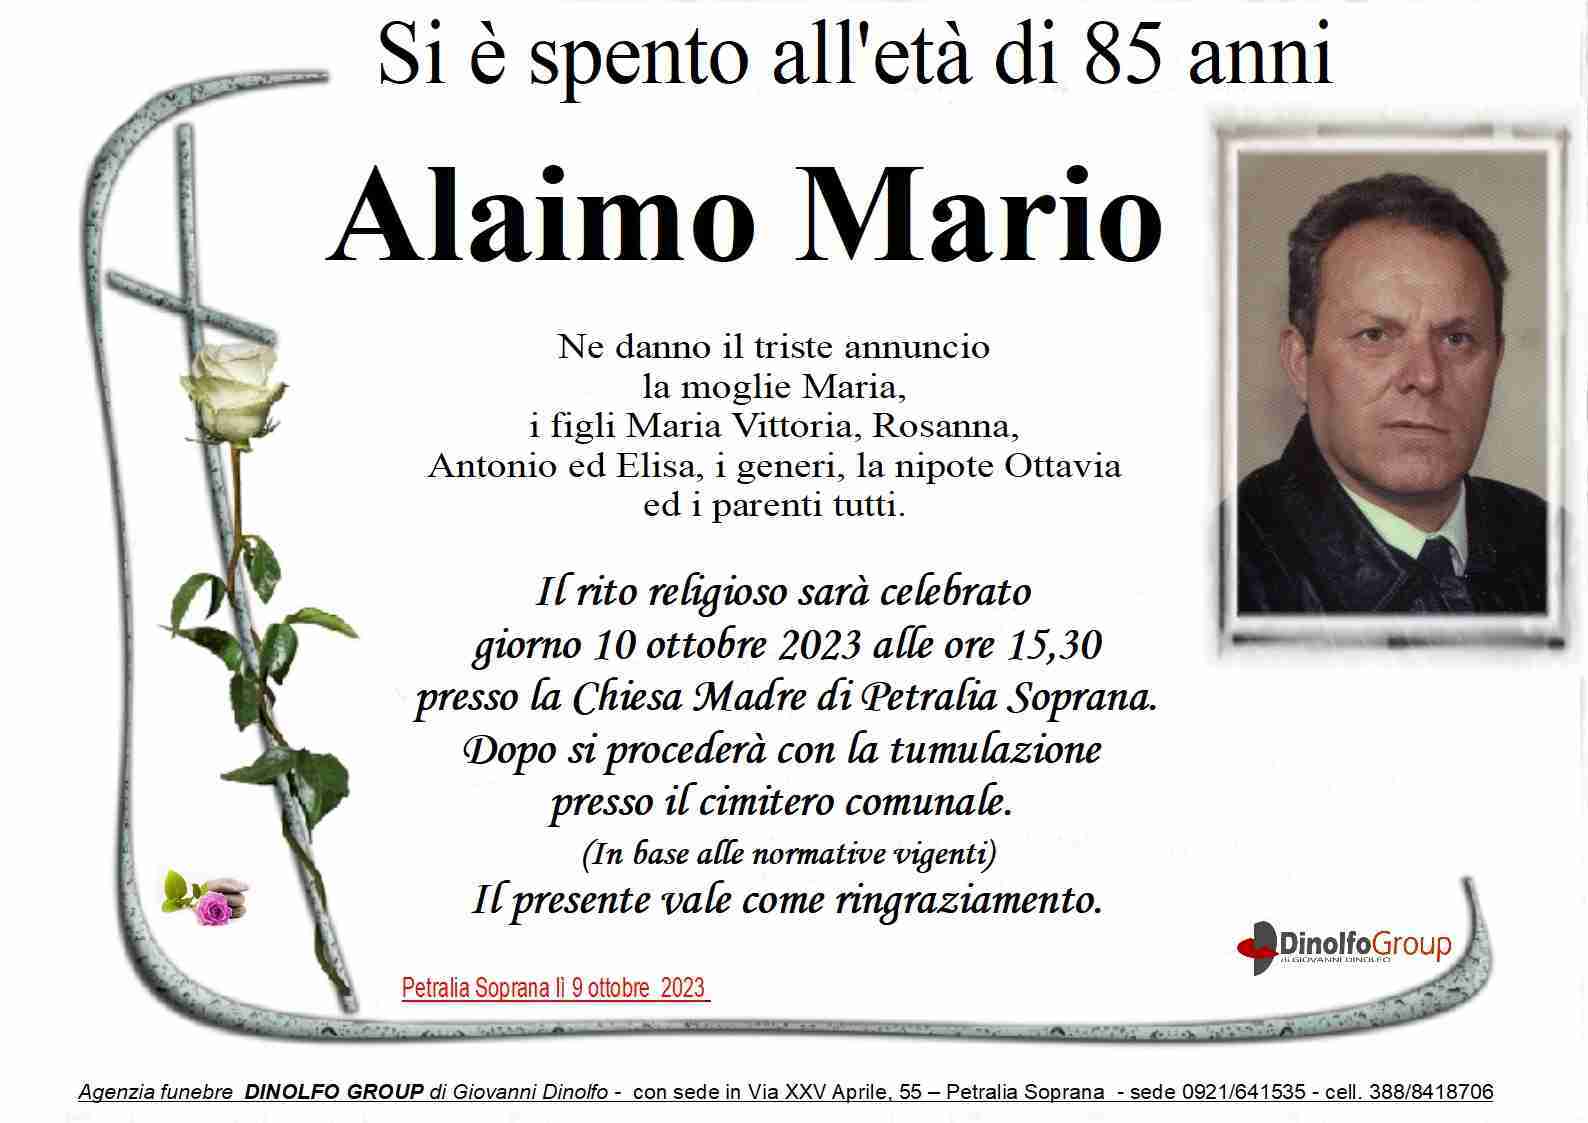 Mario Alaimo